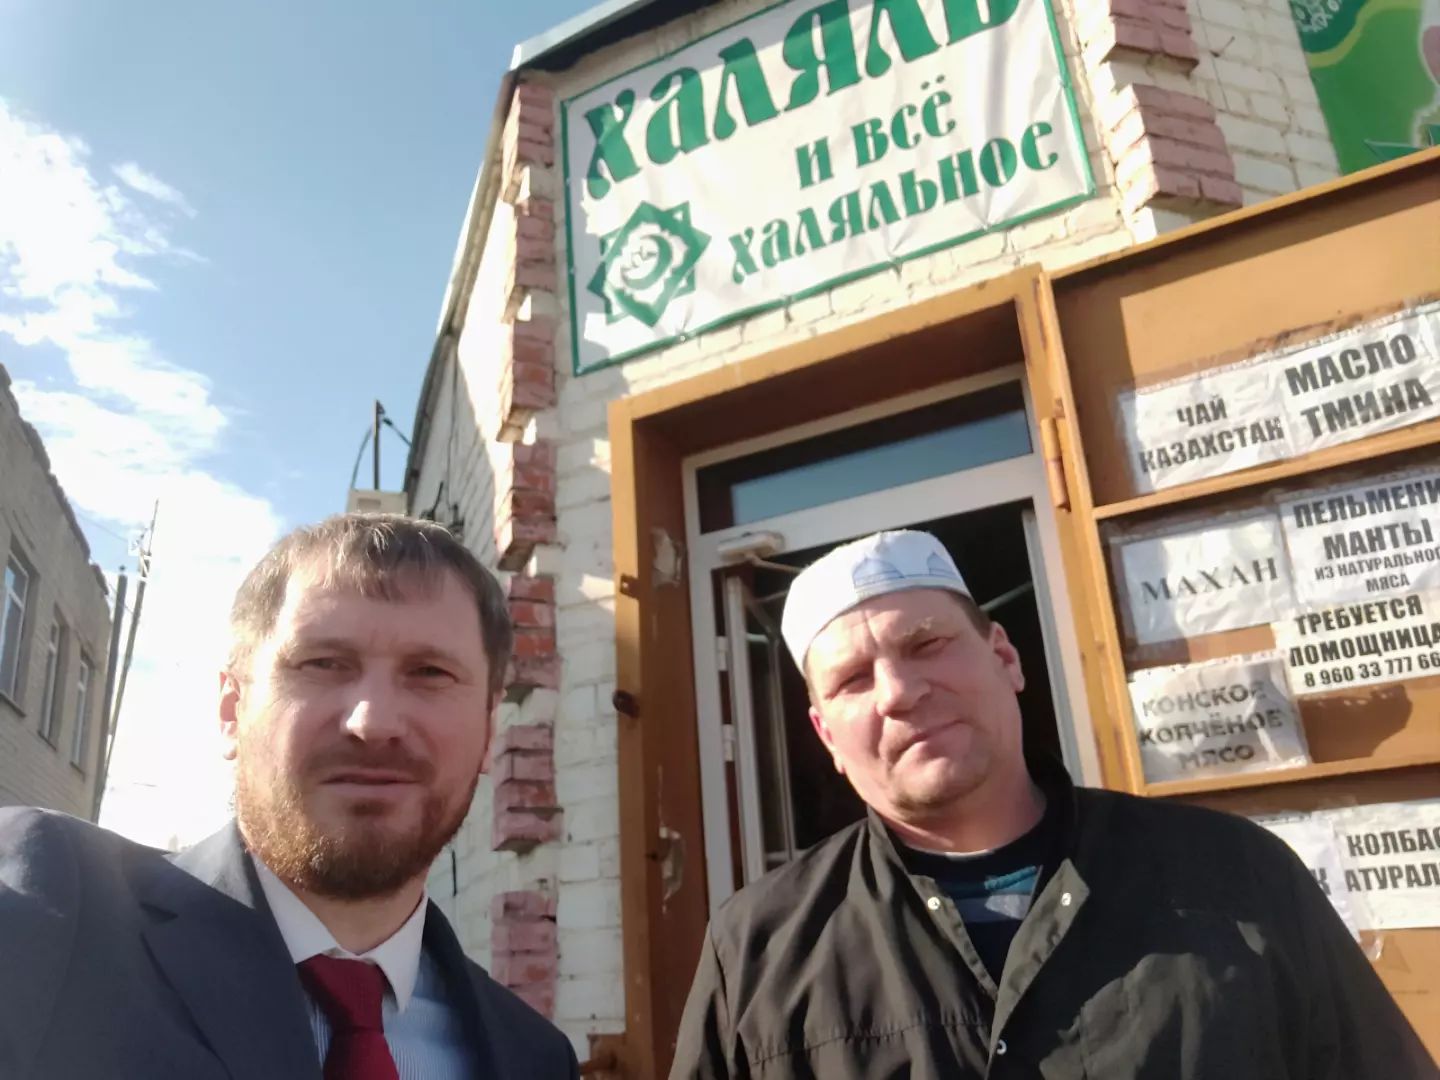 Марат Ашимов и Ислам, хозяин магазина